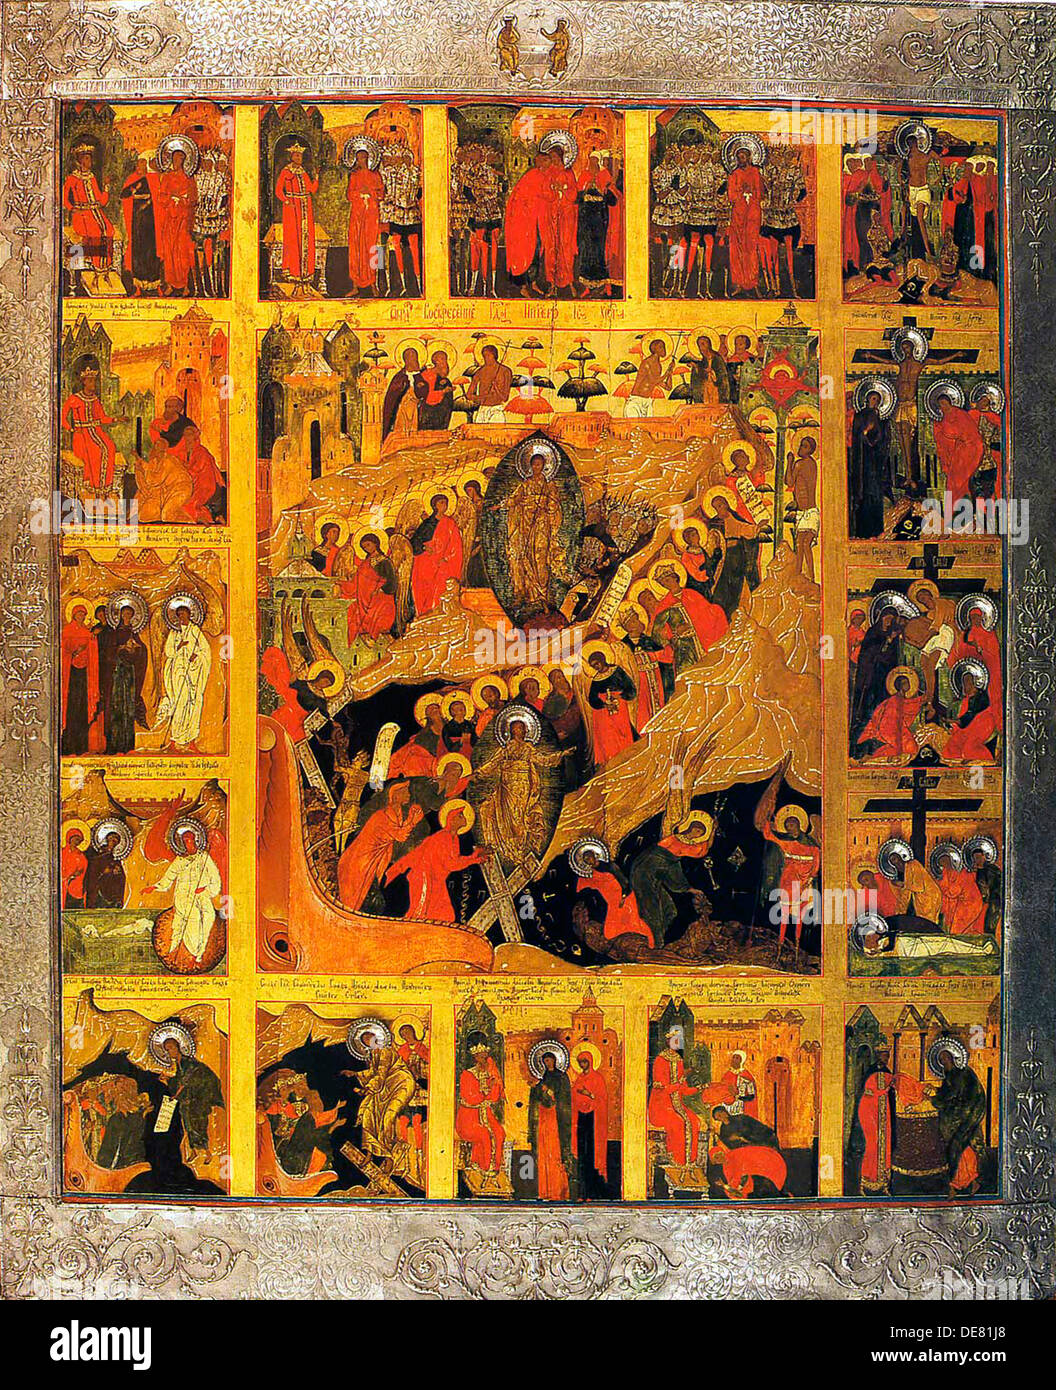 La discesa agli inferi con le scene della Passione di Cristo, del XVI secolo. Foto Stock